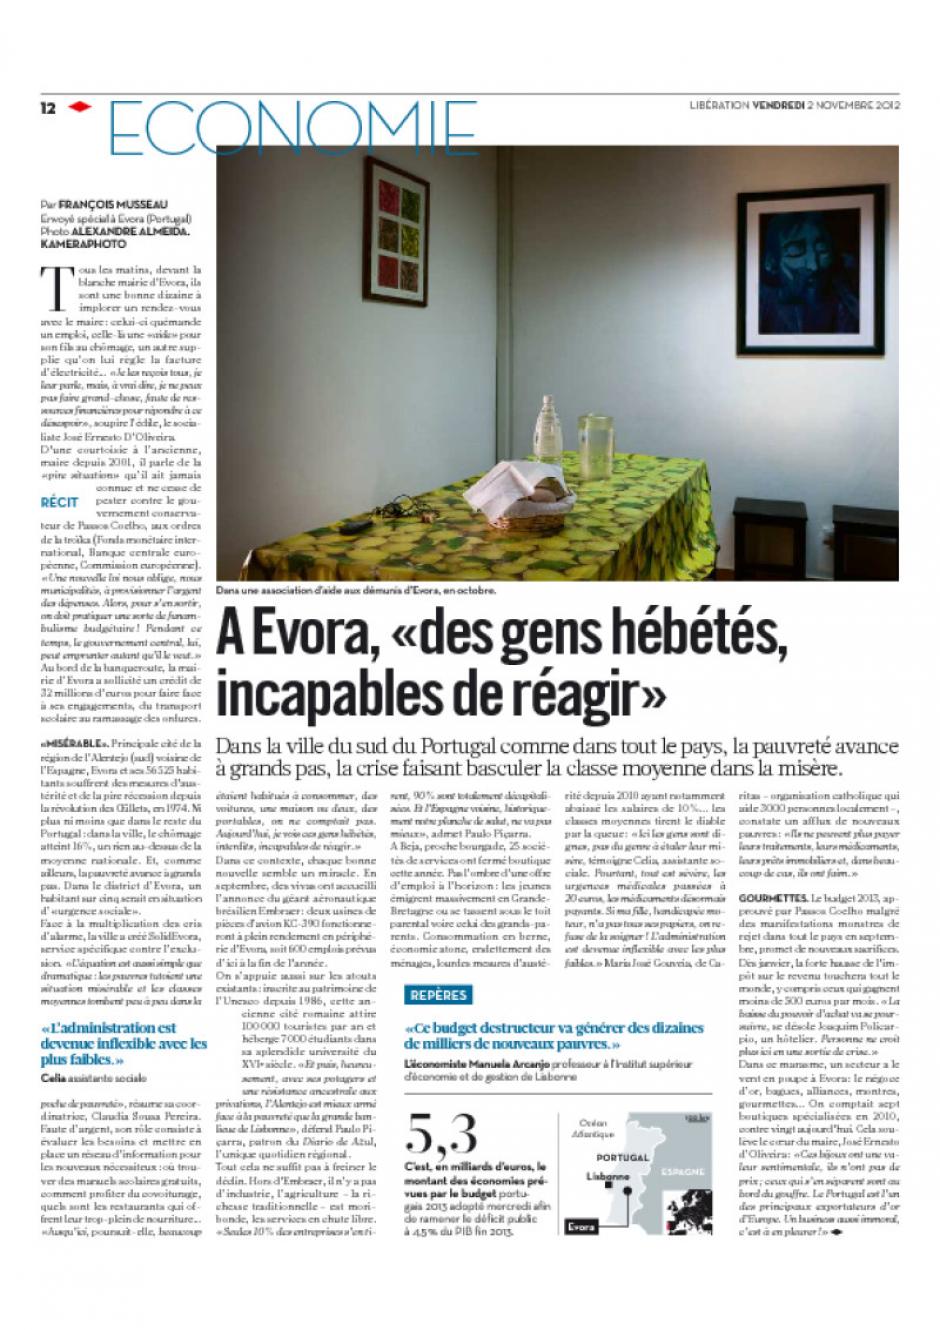 20121102-Libération-Portugal : À Evora, « des gens hébétés, incapables de réagir »